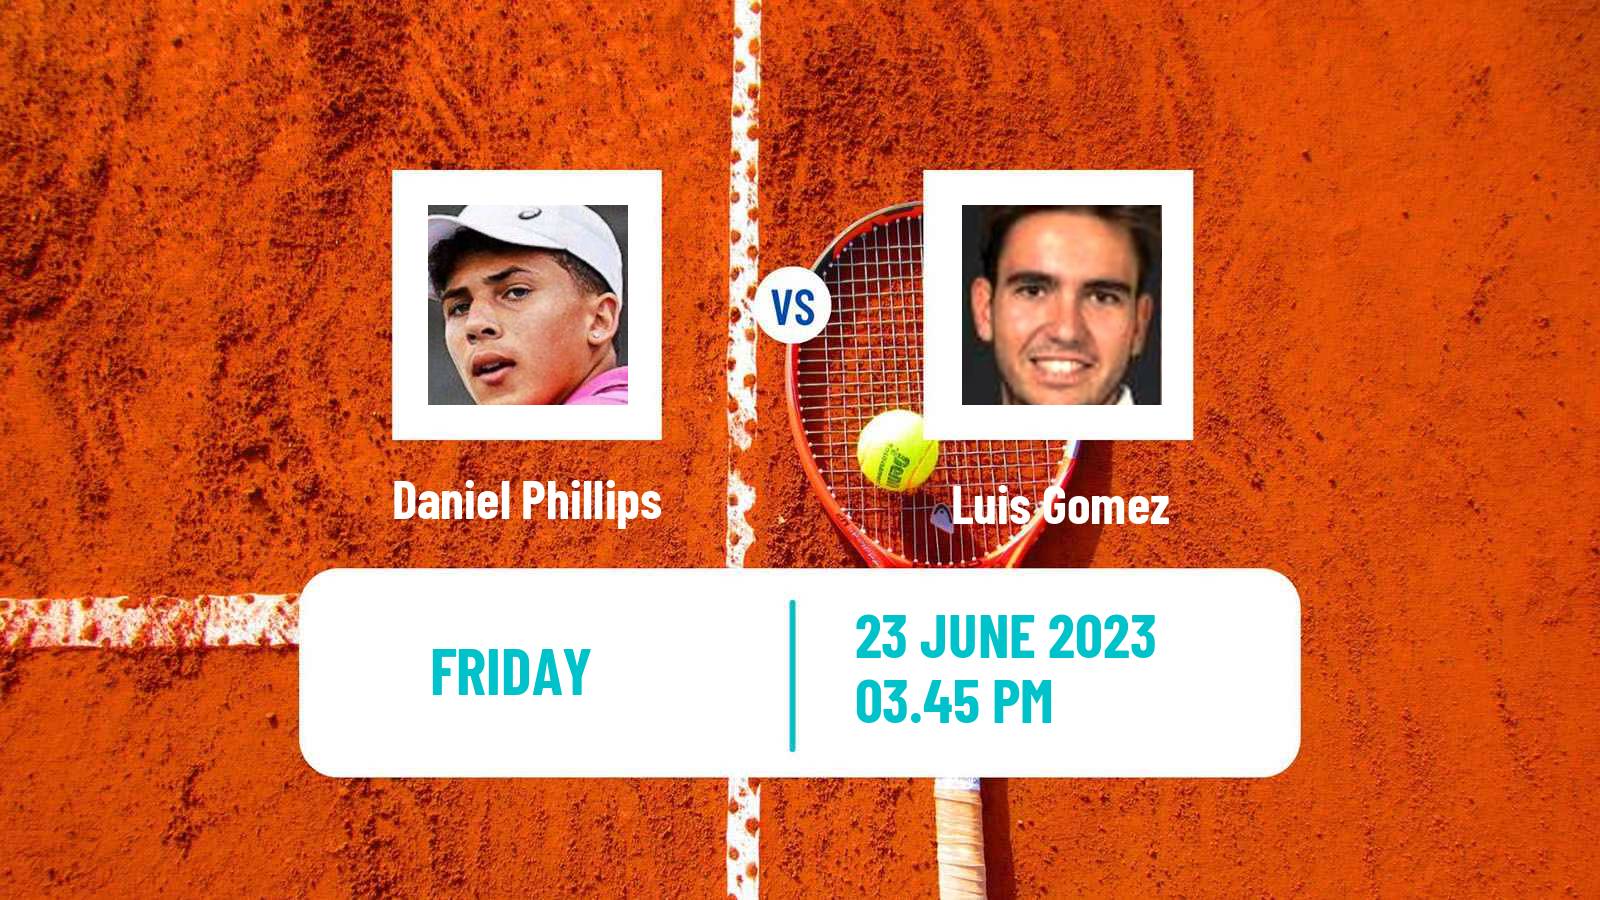 Tennis Davis Cup Group III Daniel Phillips - Luis Gomez